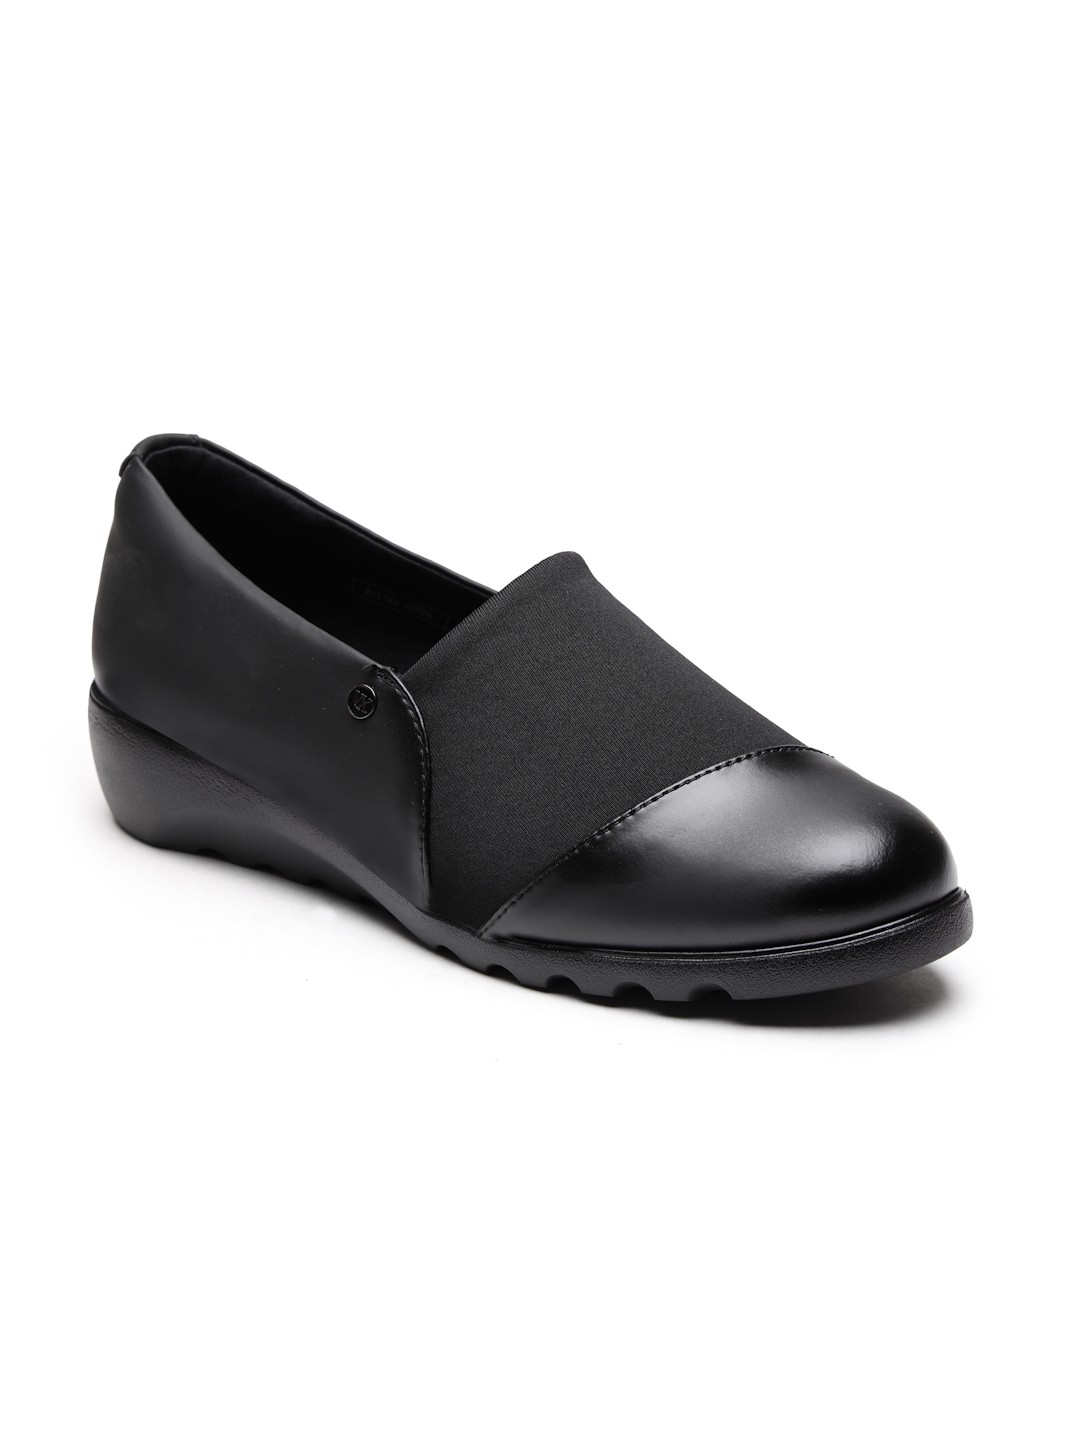 Buy Von Wellx Germany Comfort Women's Black Casual Shoes Ayla Online in Seemandhra